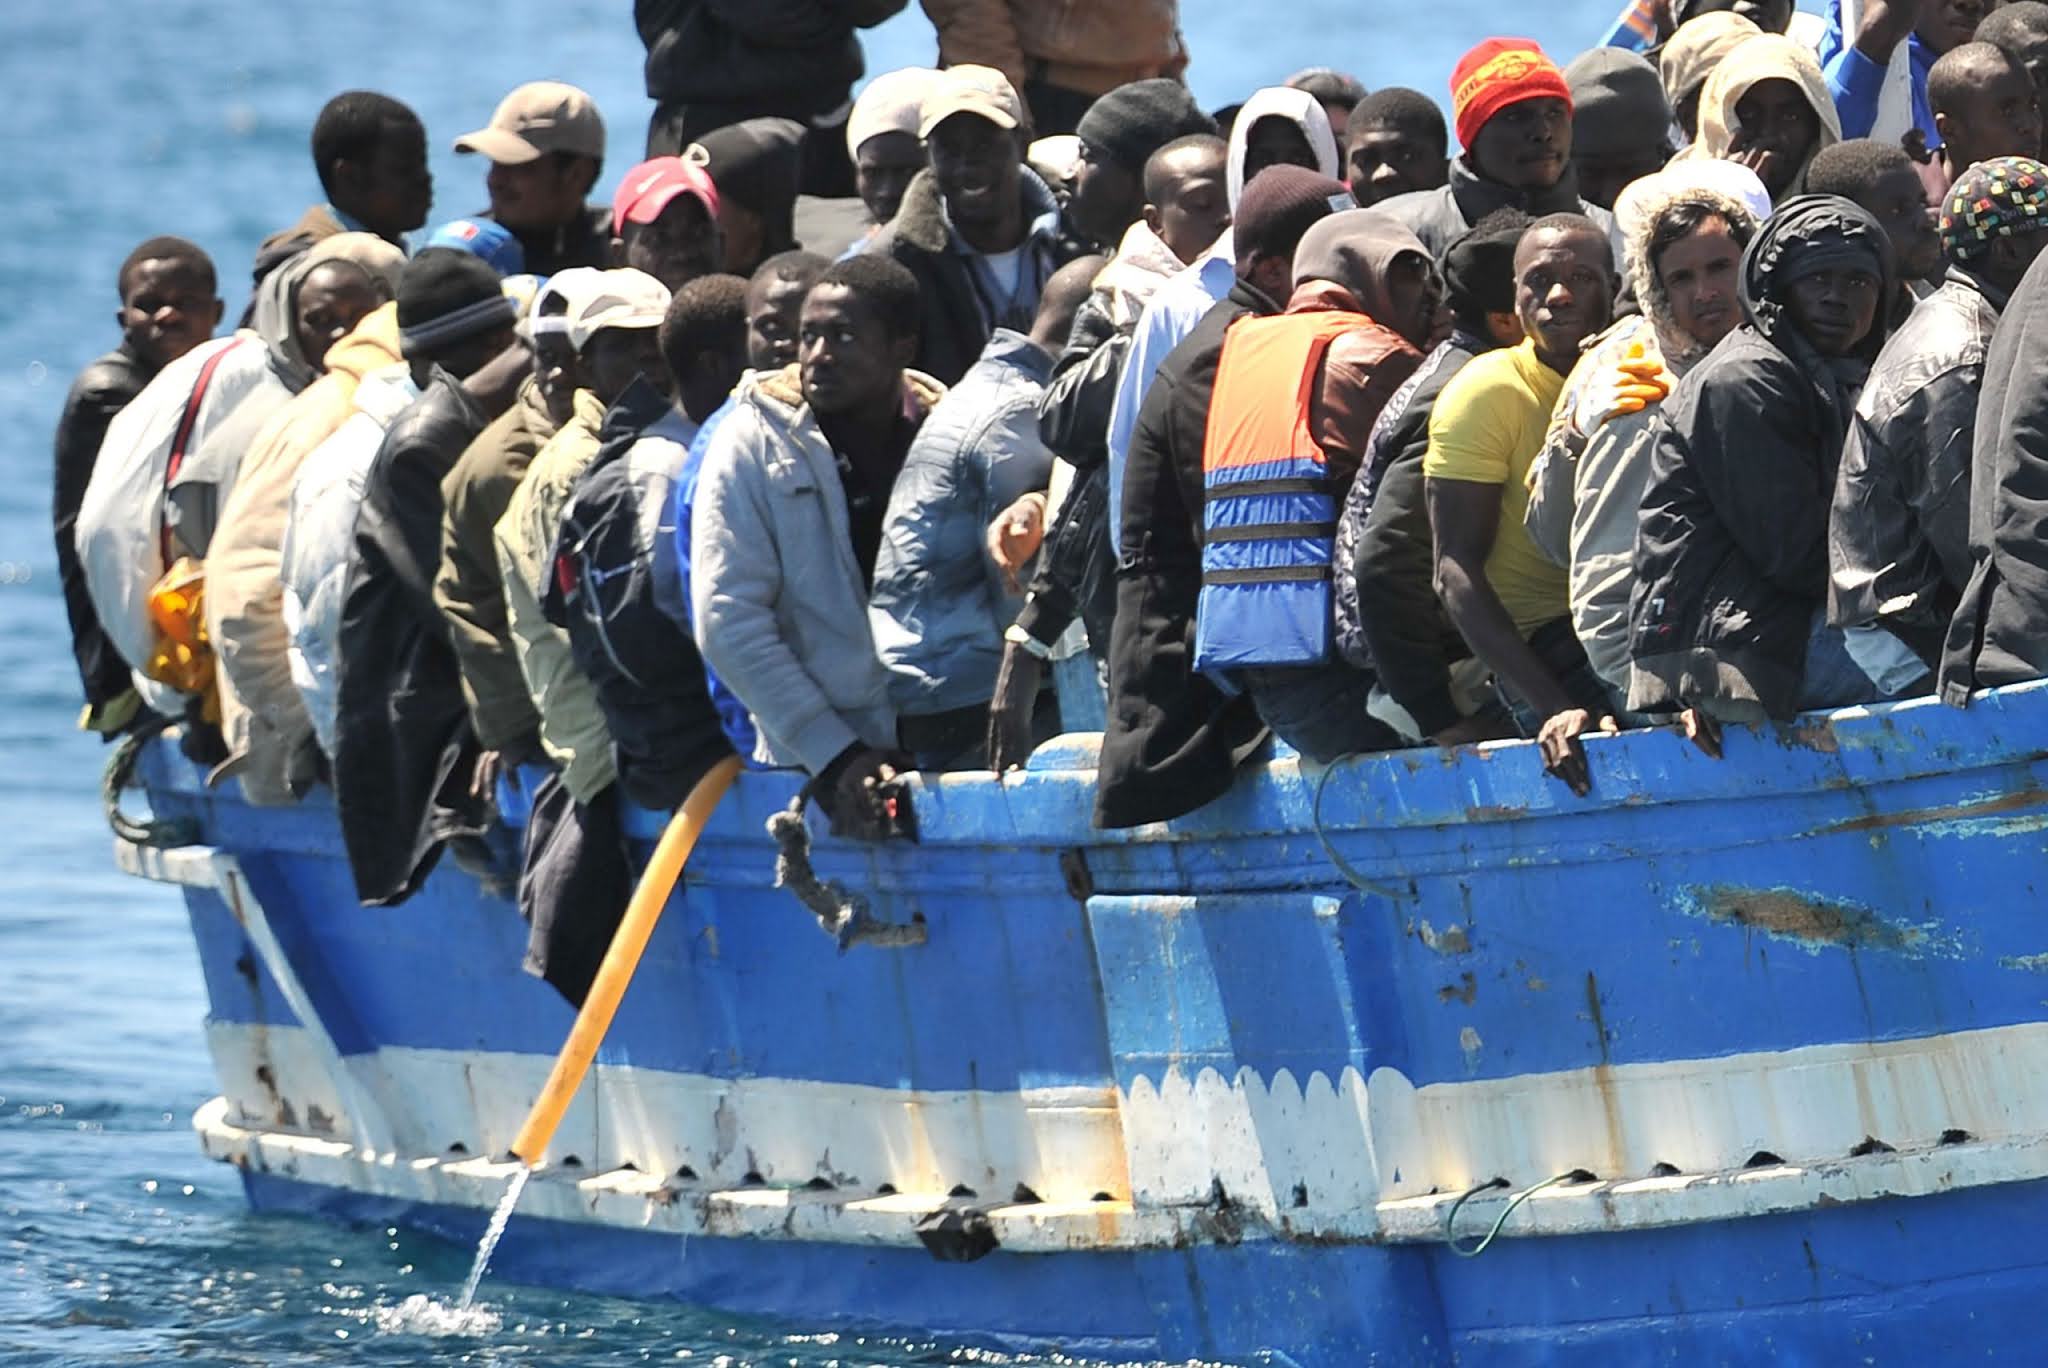 La tensione tra Italia e Germania sulla questione migranti aumenta mentre sette navi di ONG si dirigono verso Lampedusa